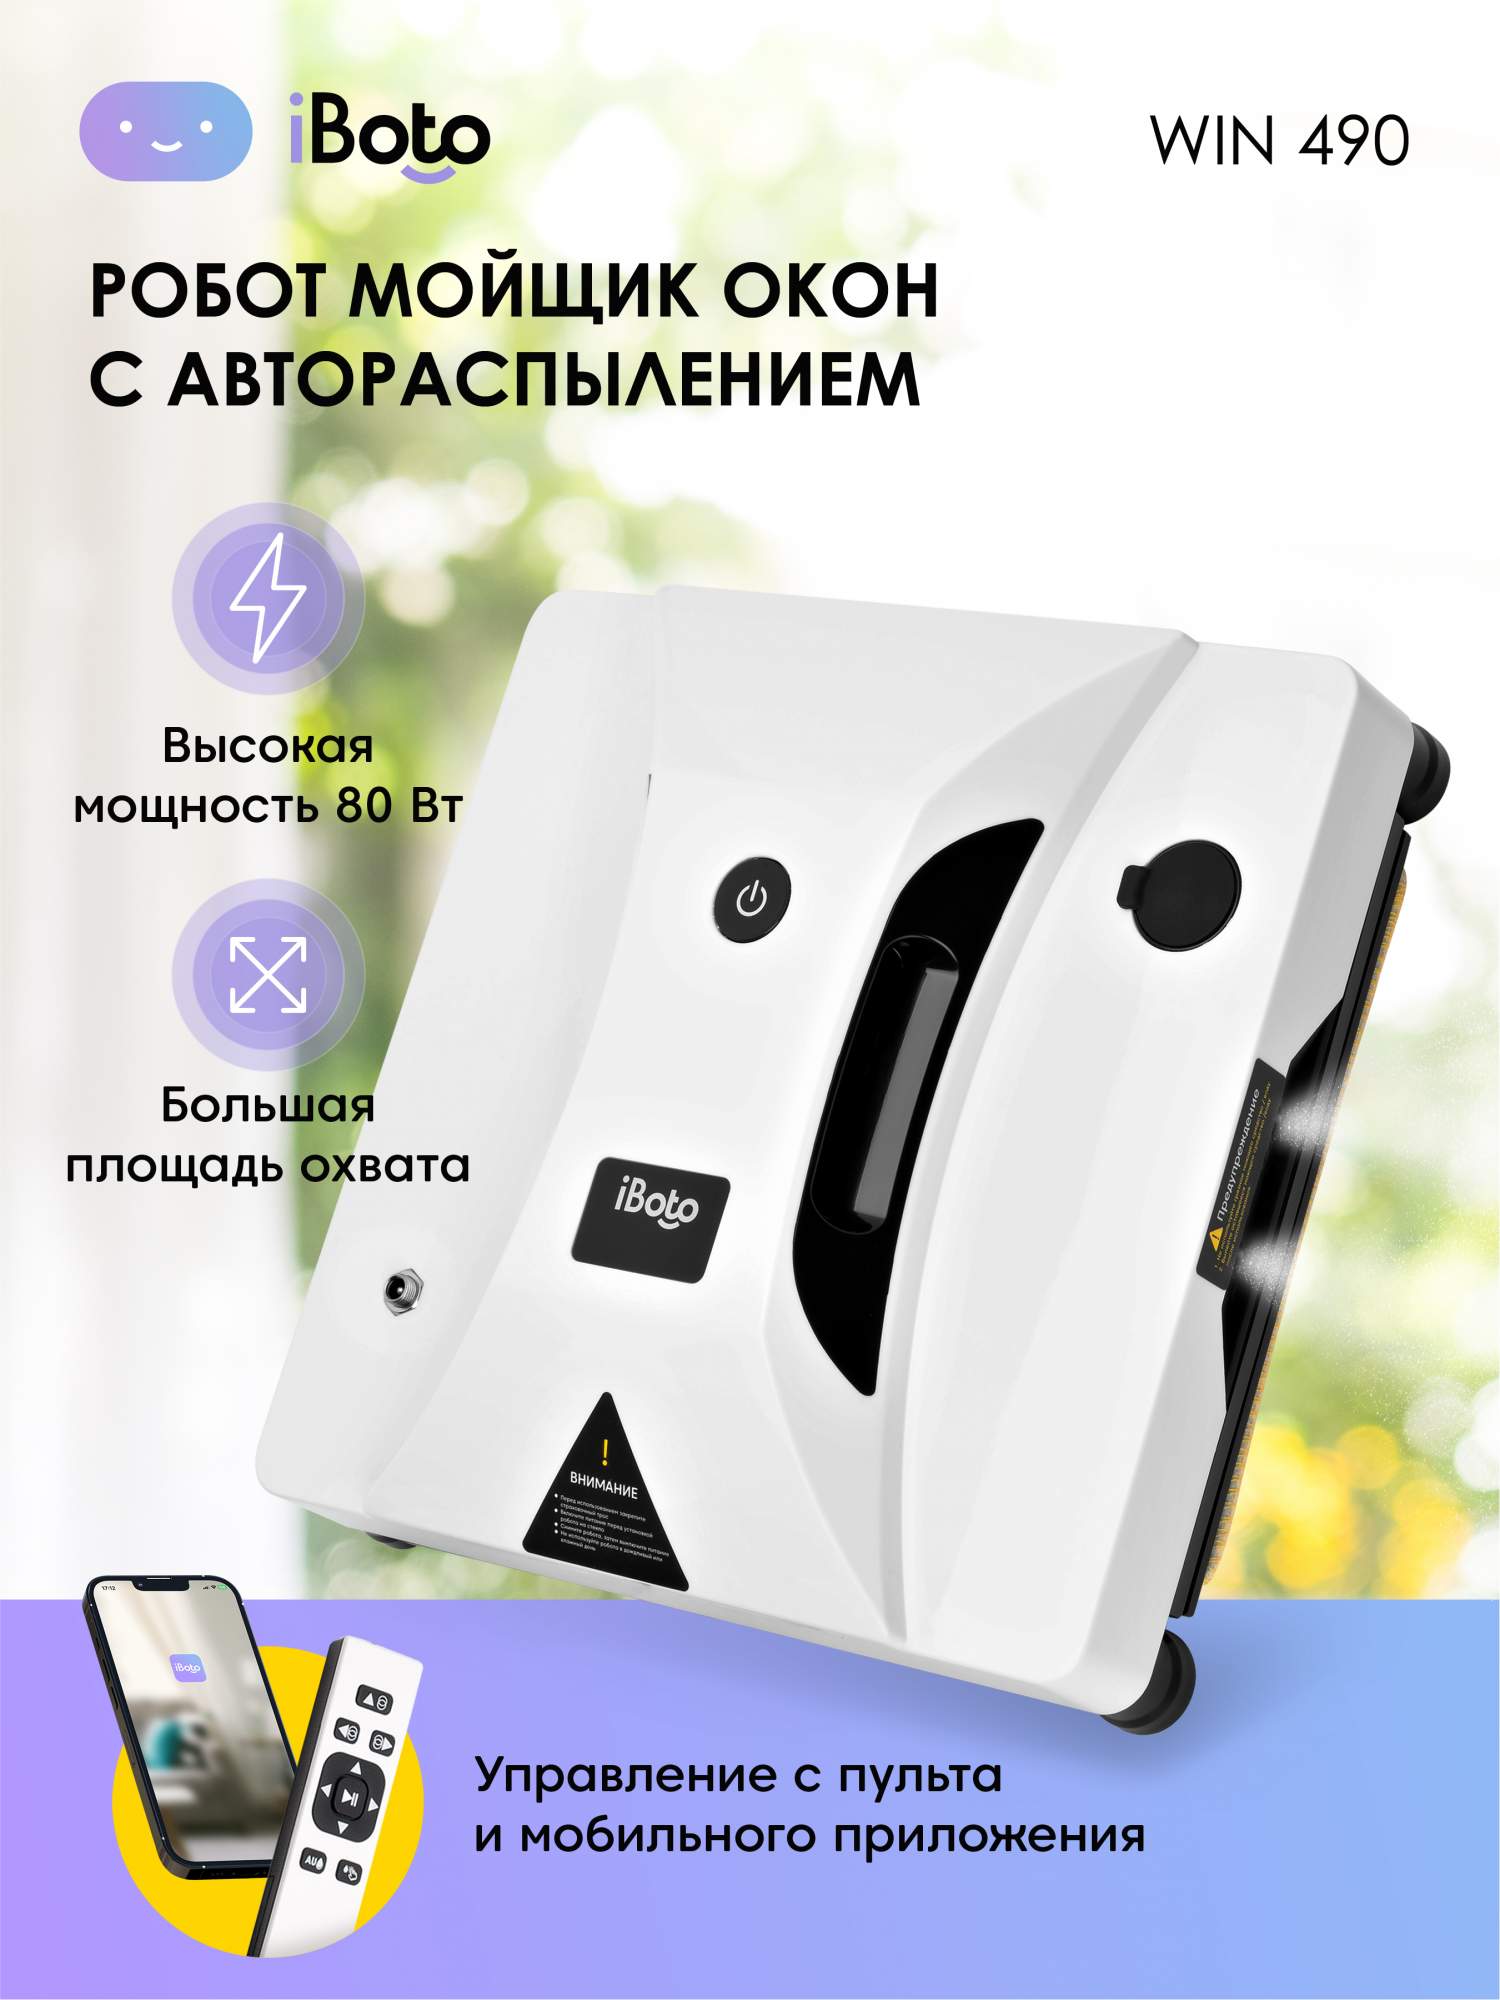 Робот-мойщик окон iBoto WIN 490 ULTRASONIC White, купить в Москве, цены в интернет-магазинах на Мегамаркет